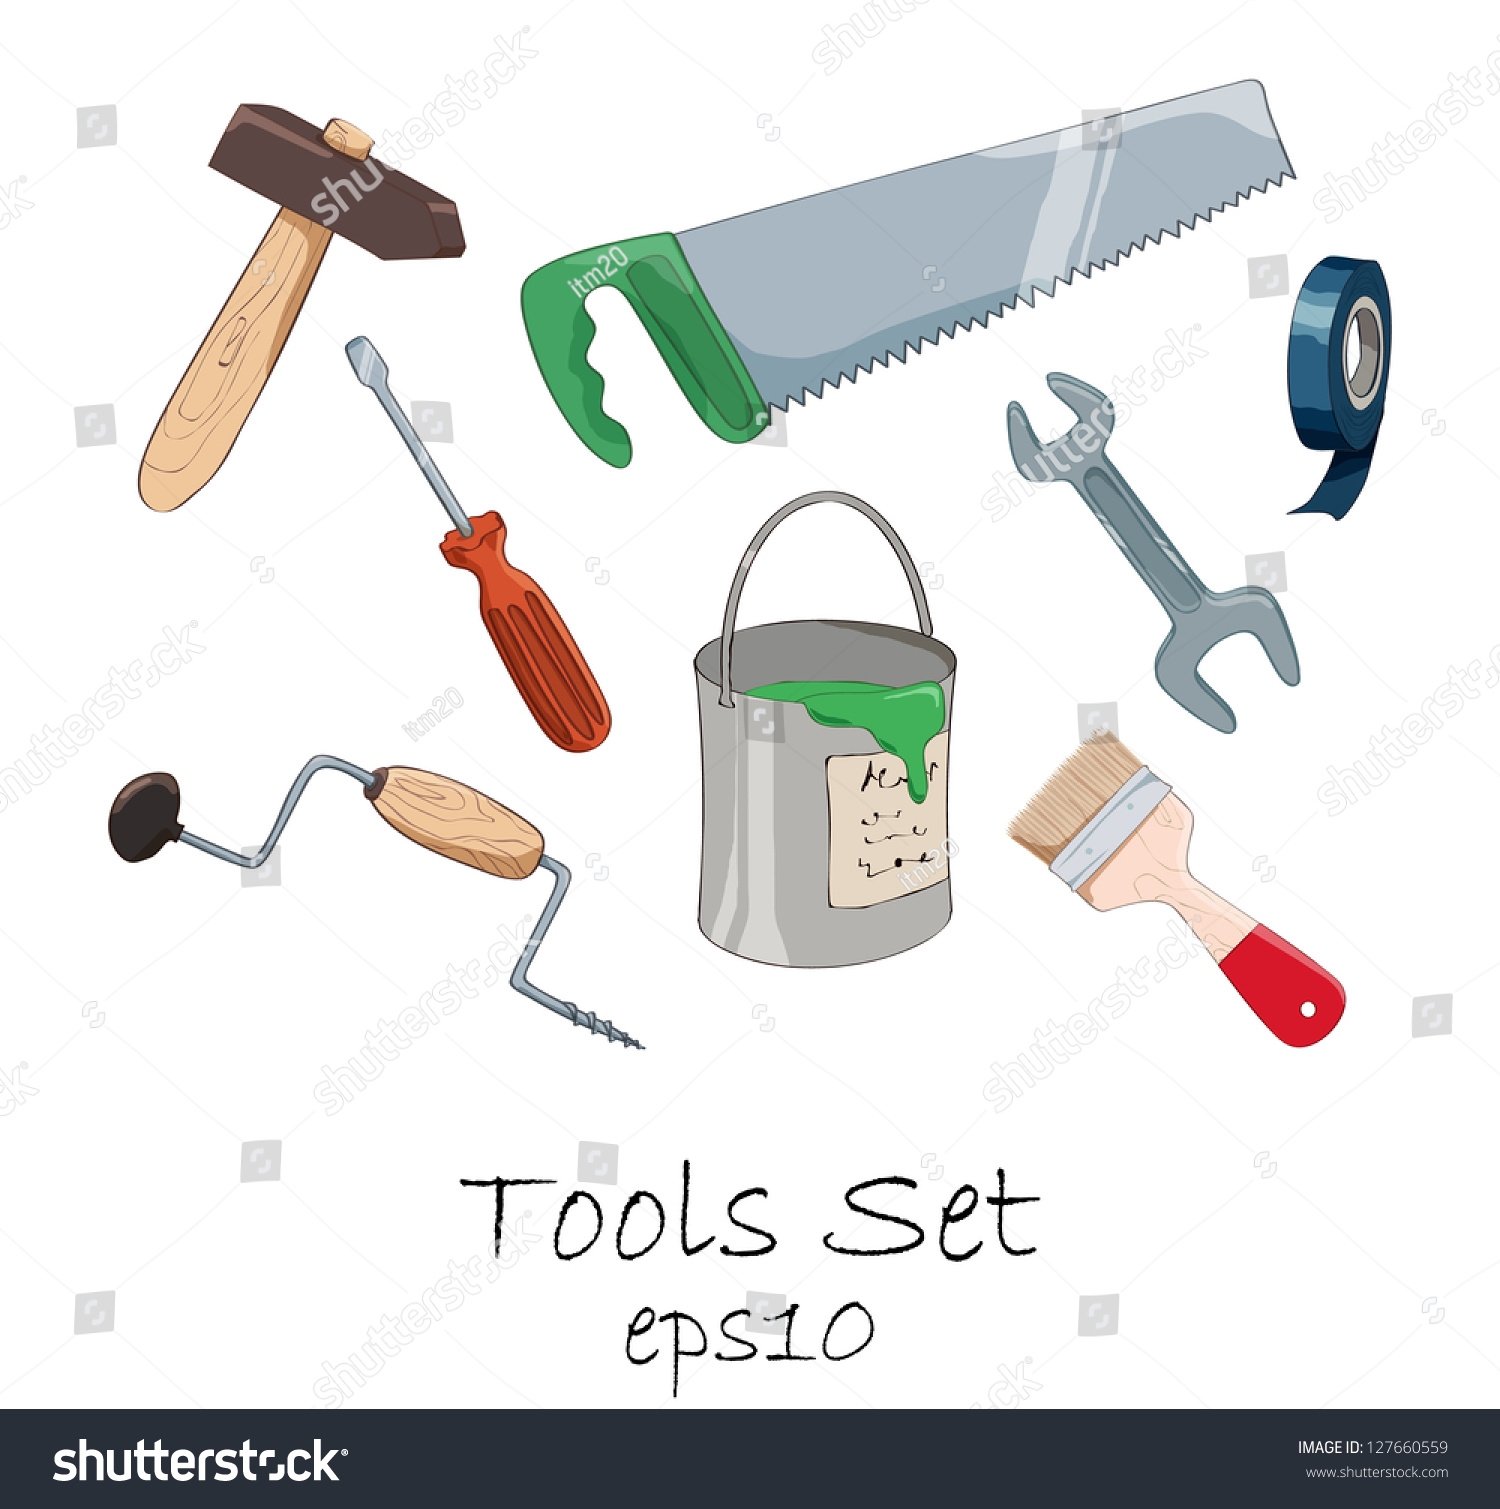 Cartoon Tools Set Stock Vector Illustration 127660559 : Shutterstock